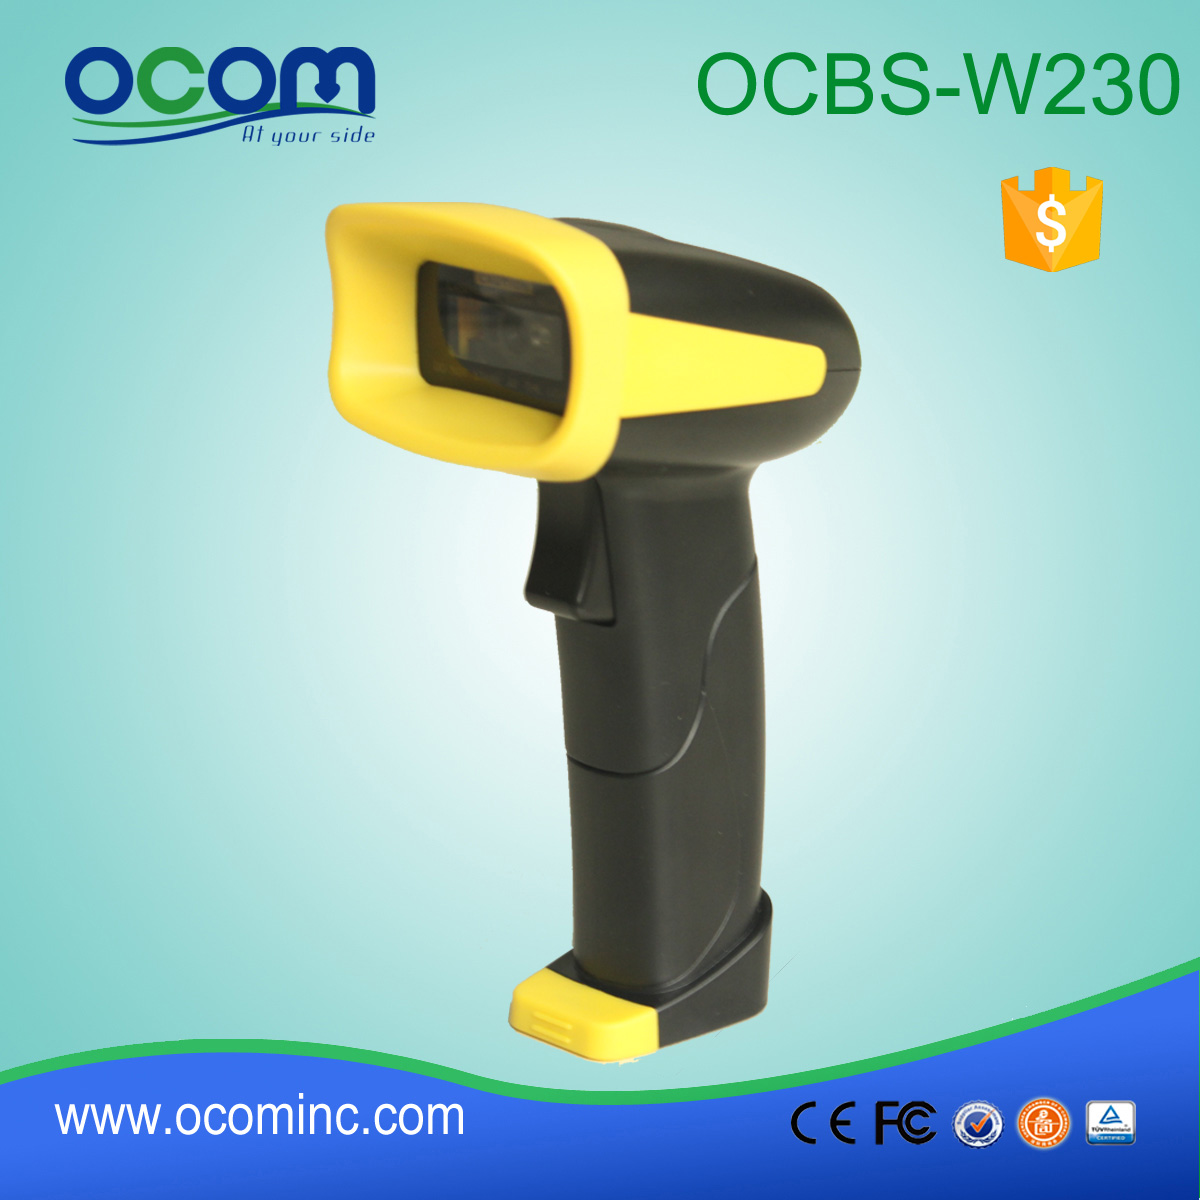 OCBS-W230: 2D portátil escáner de código de barras inalámbrico Bluetooth de alta velocidad